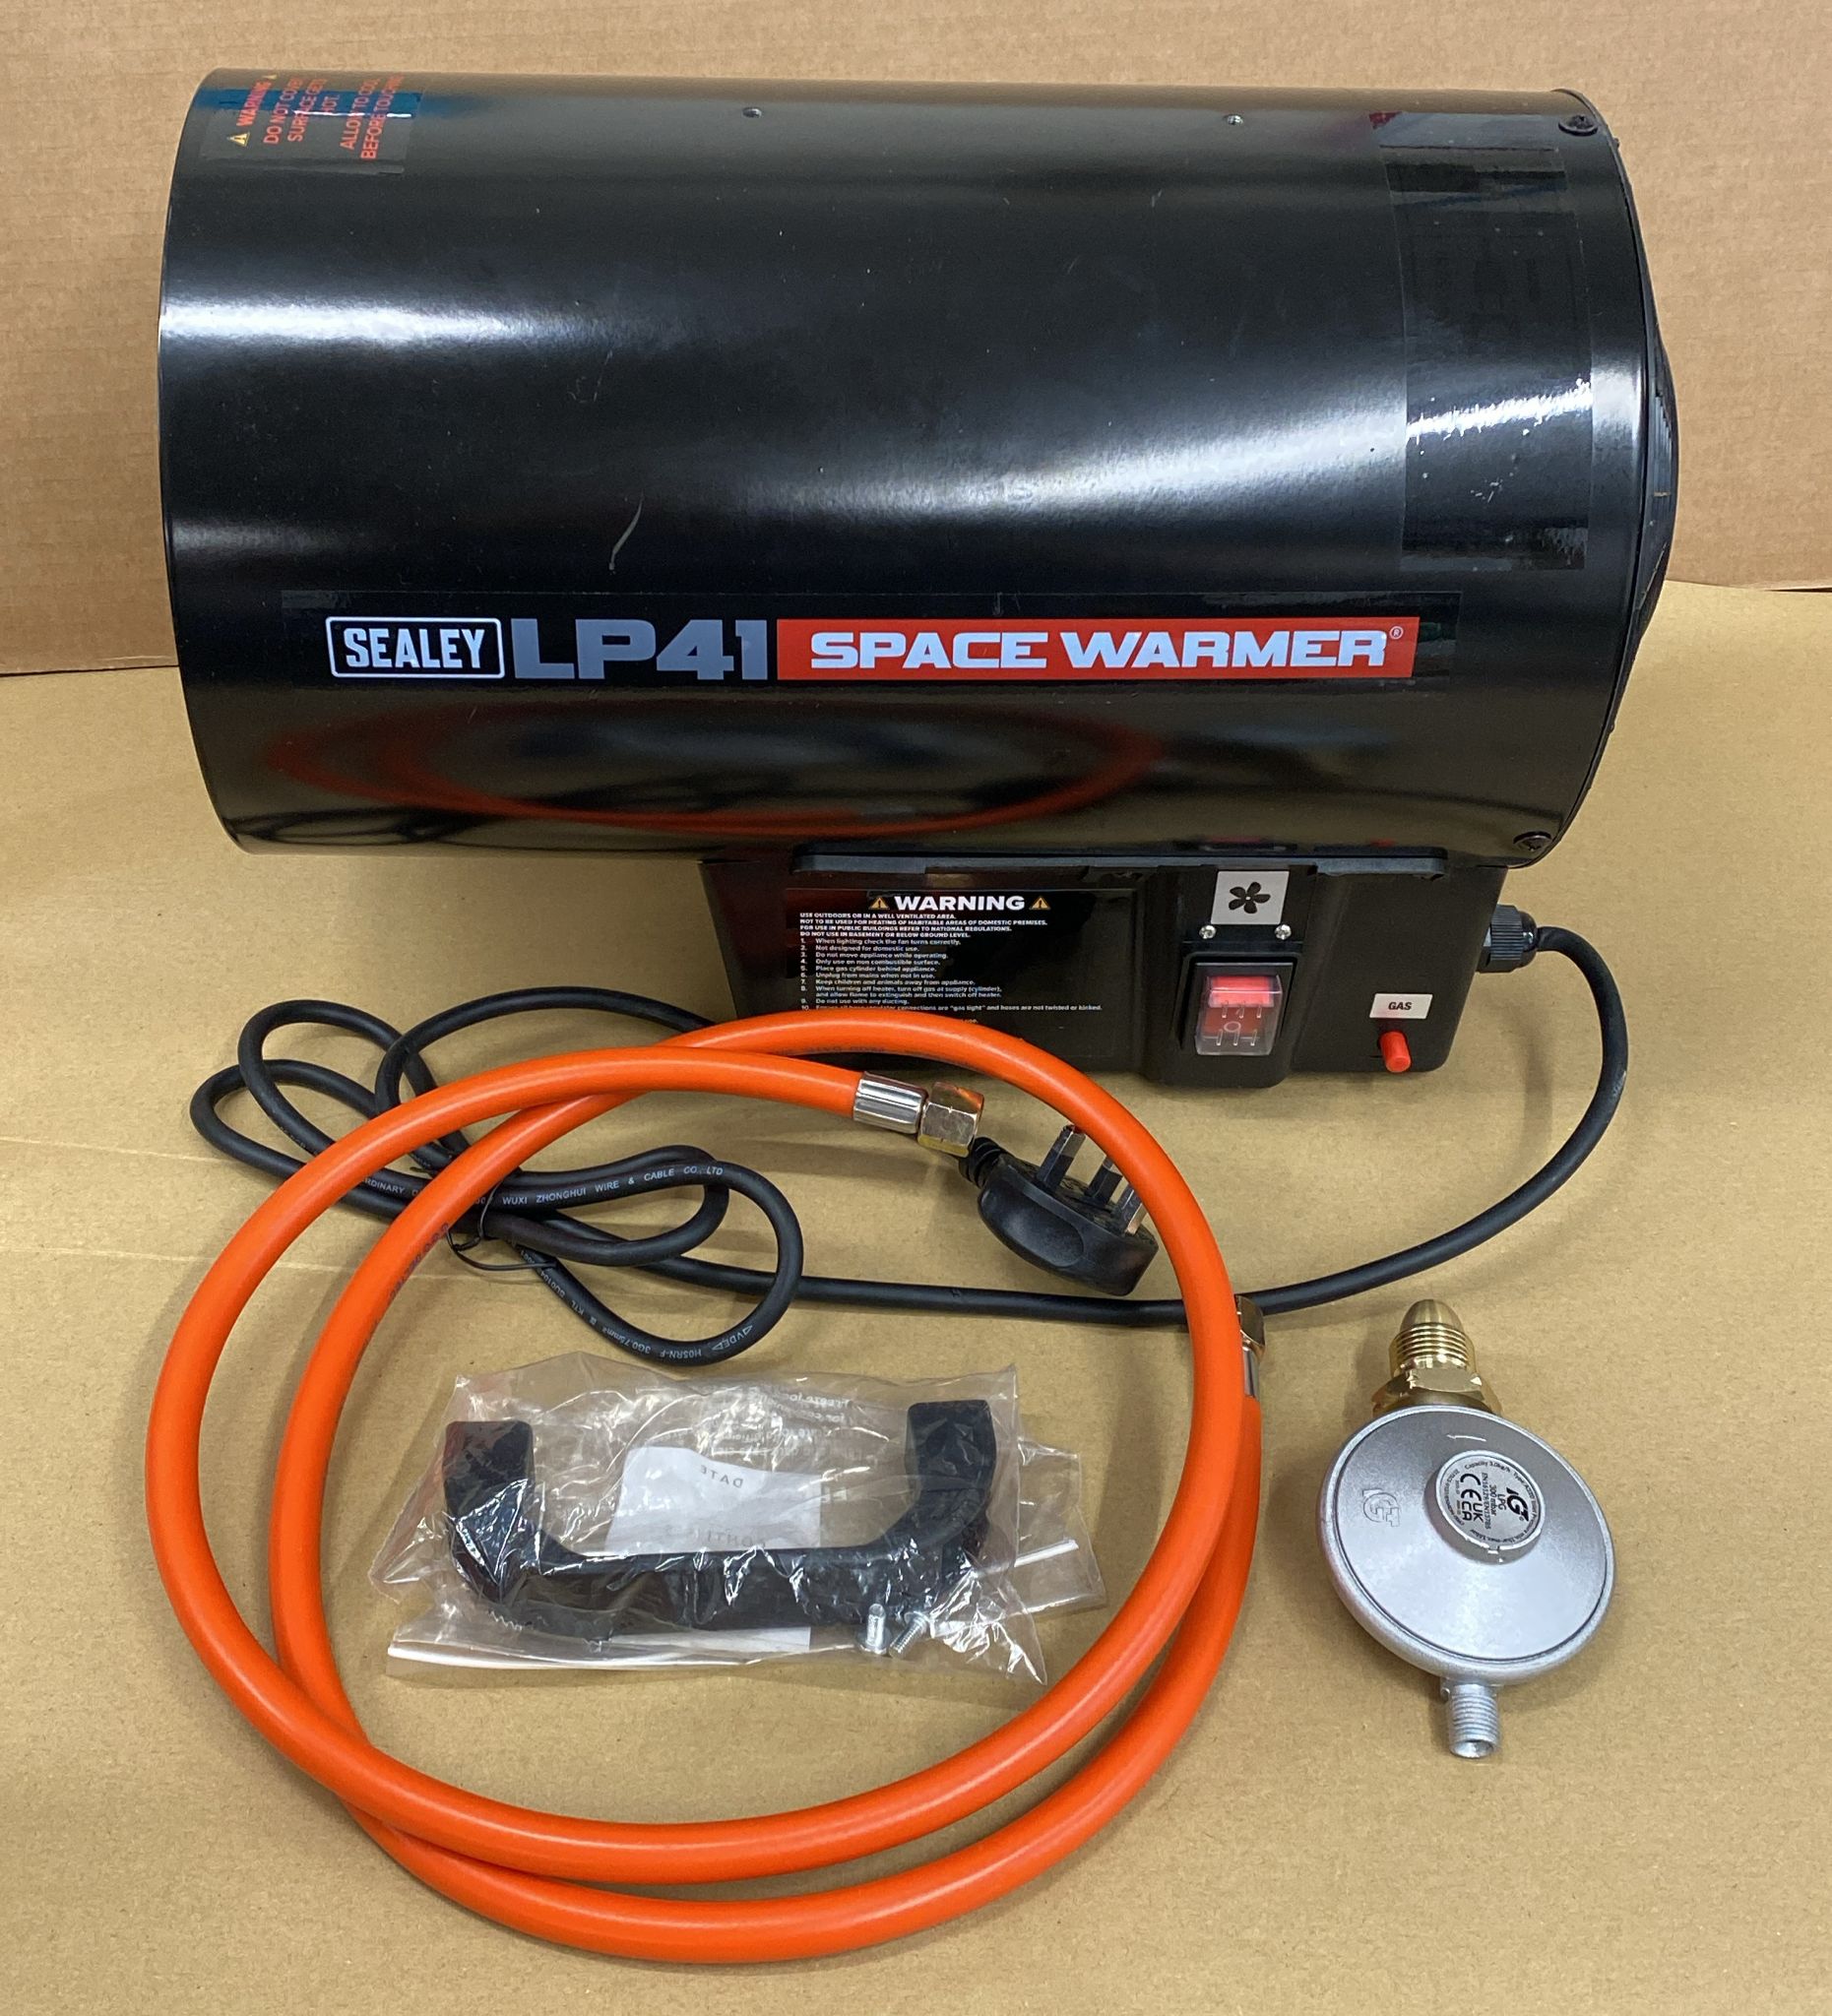 Sealey 40,500Btu/hr(11.5kW) Space Warmer® Propane Heater - LP41-3358